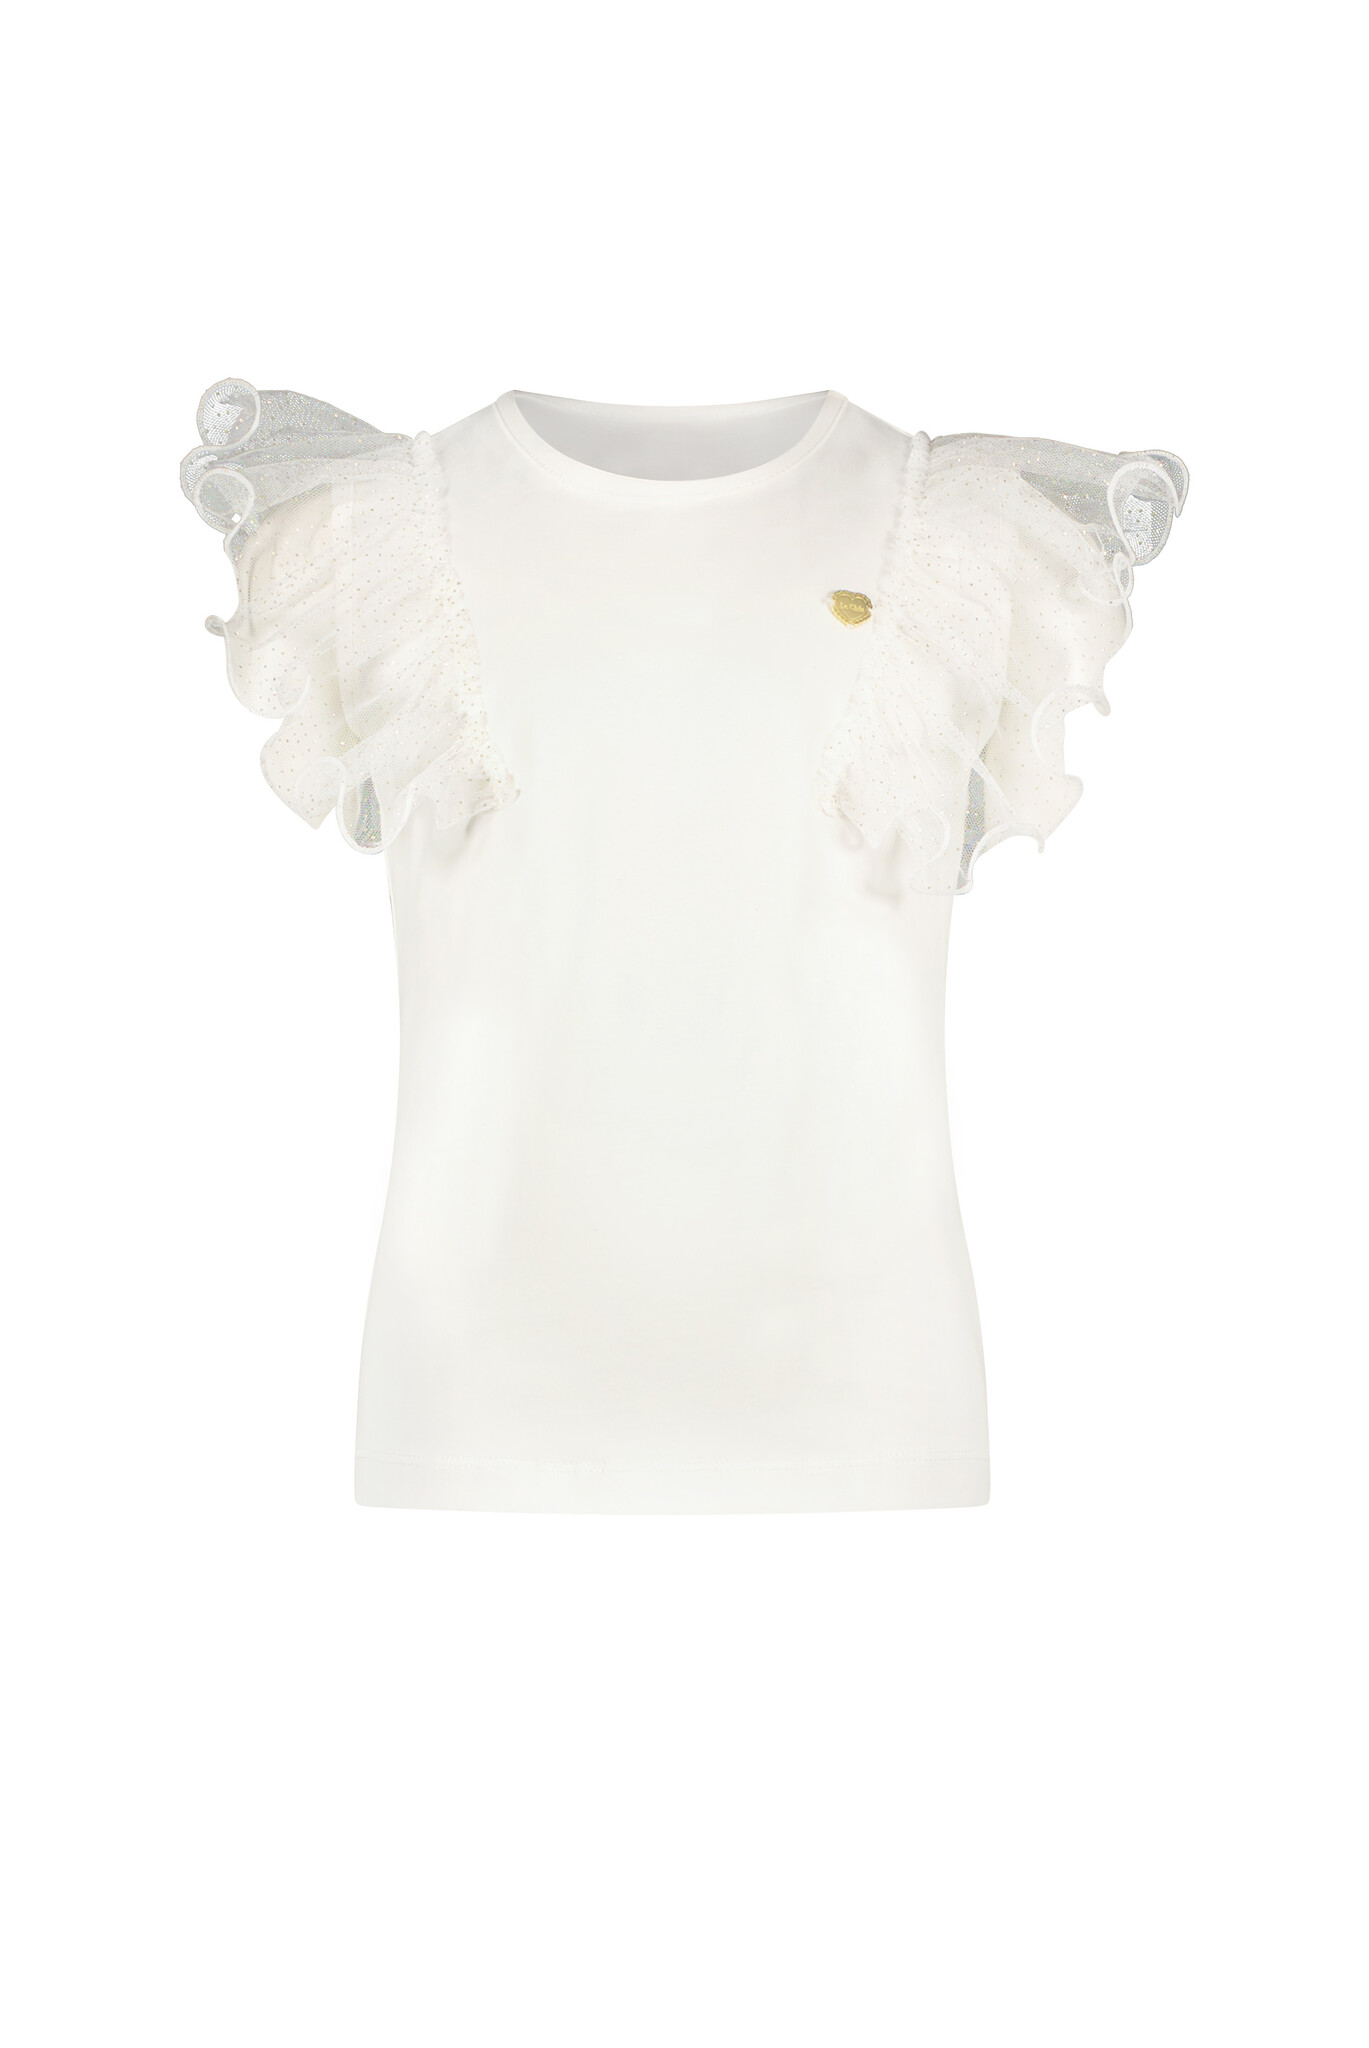 Le Chic C312-5402 Meisjes T-shirt - Off White - Maat 110